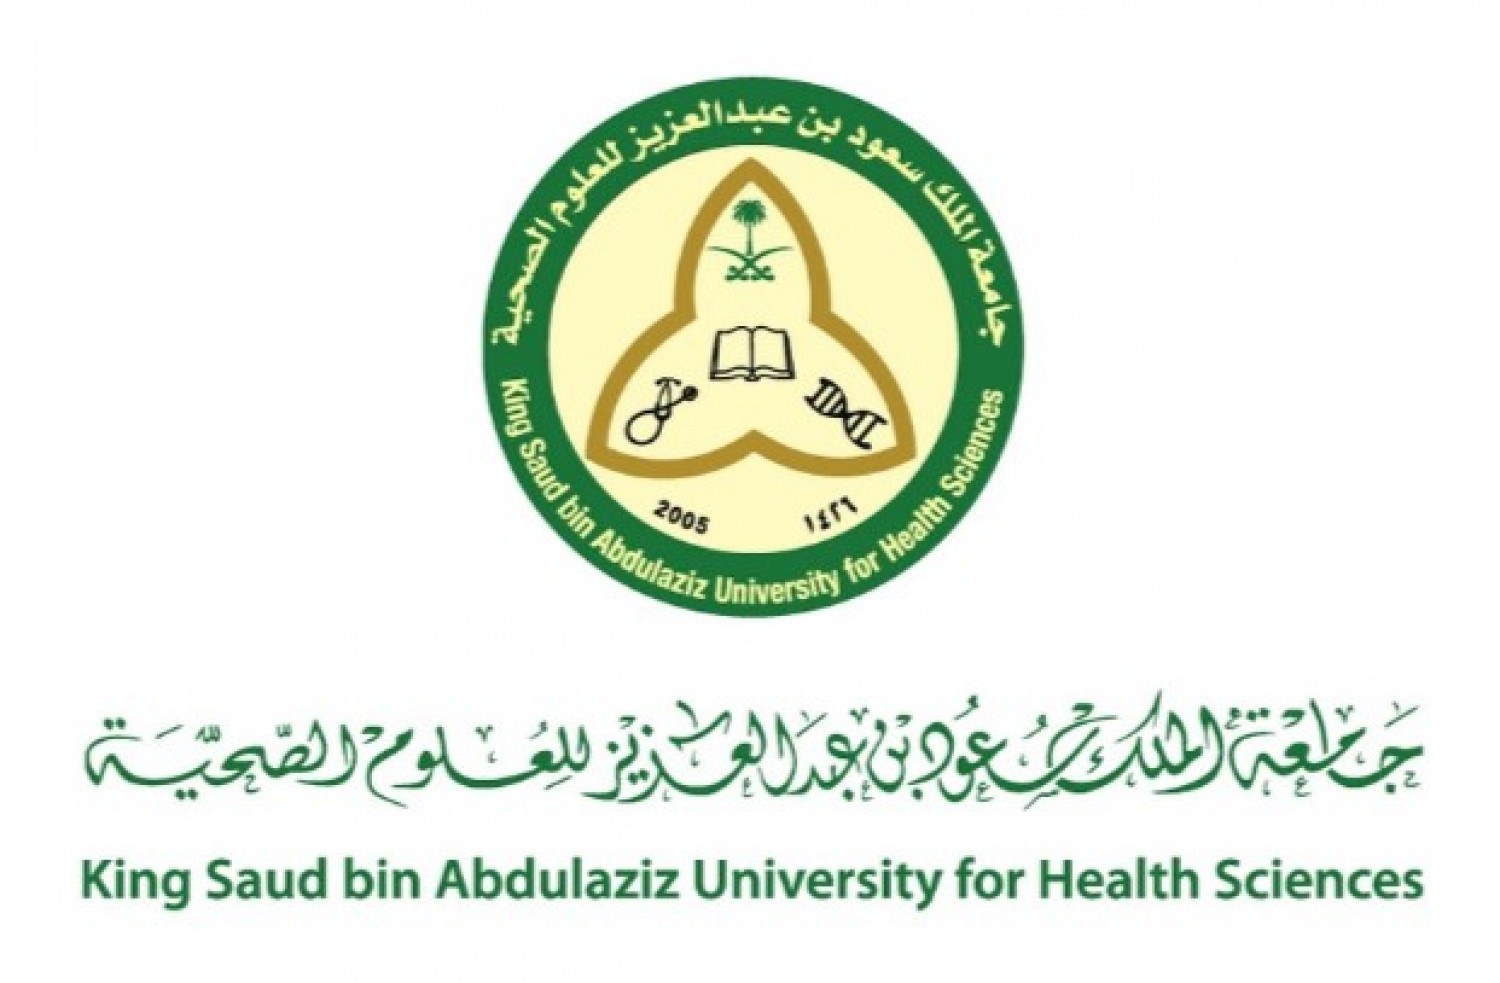 الملك سعود للعلوم الصحية - الاعلان عن وظائف شاغرة لدى جامعة الملك سعود للعلوم الصحية لحملة الدبلوم فأعلى